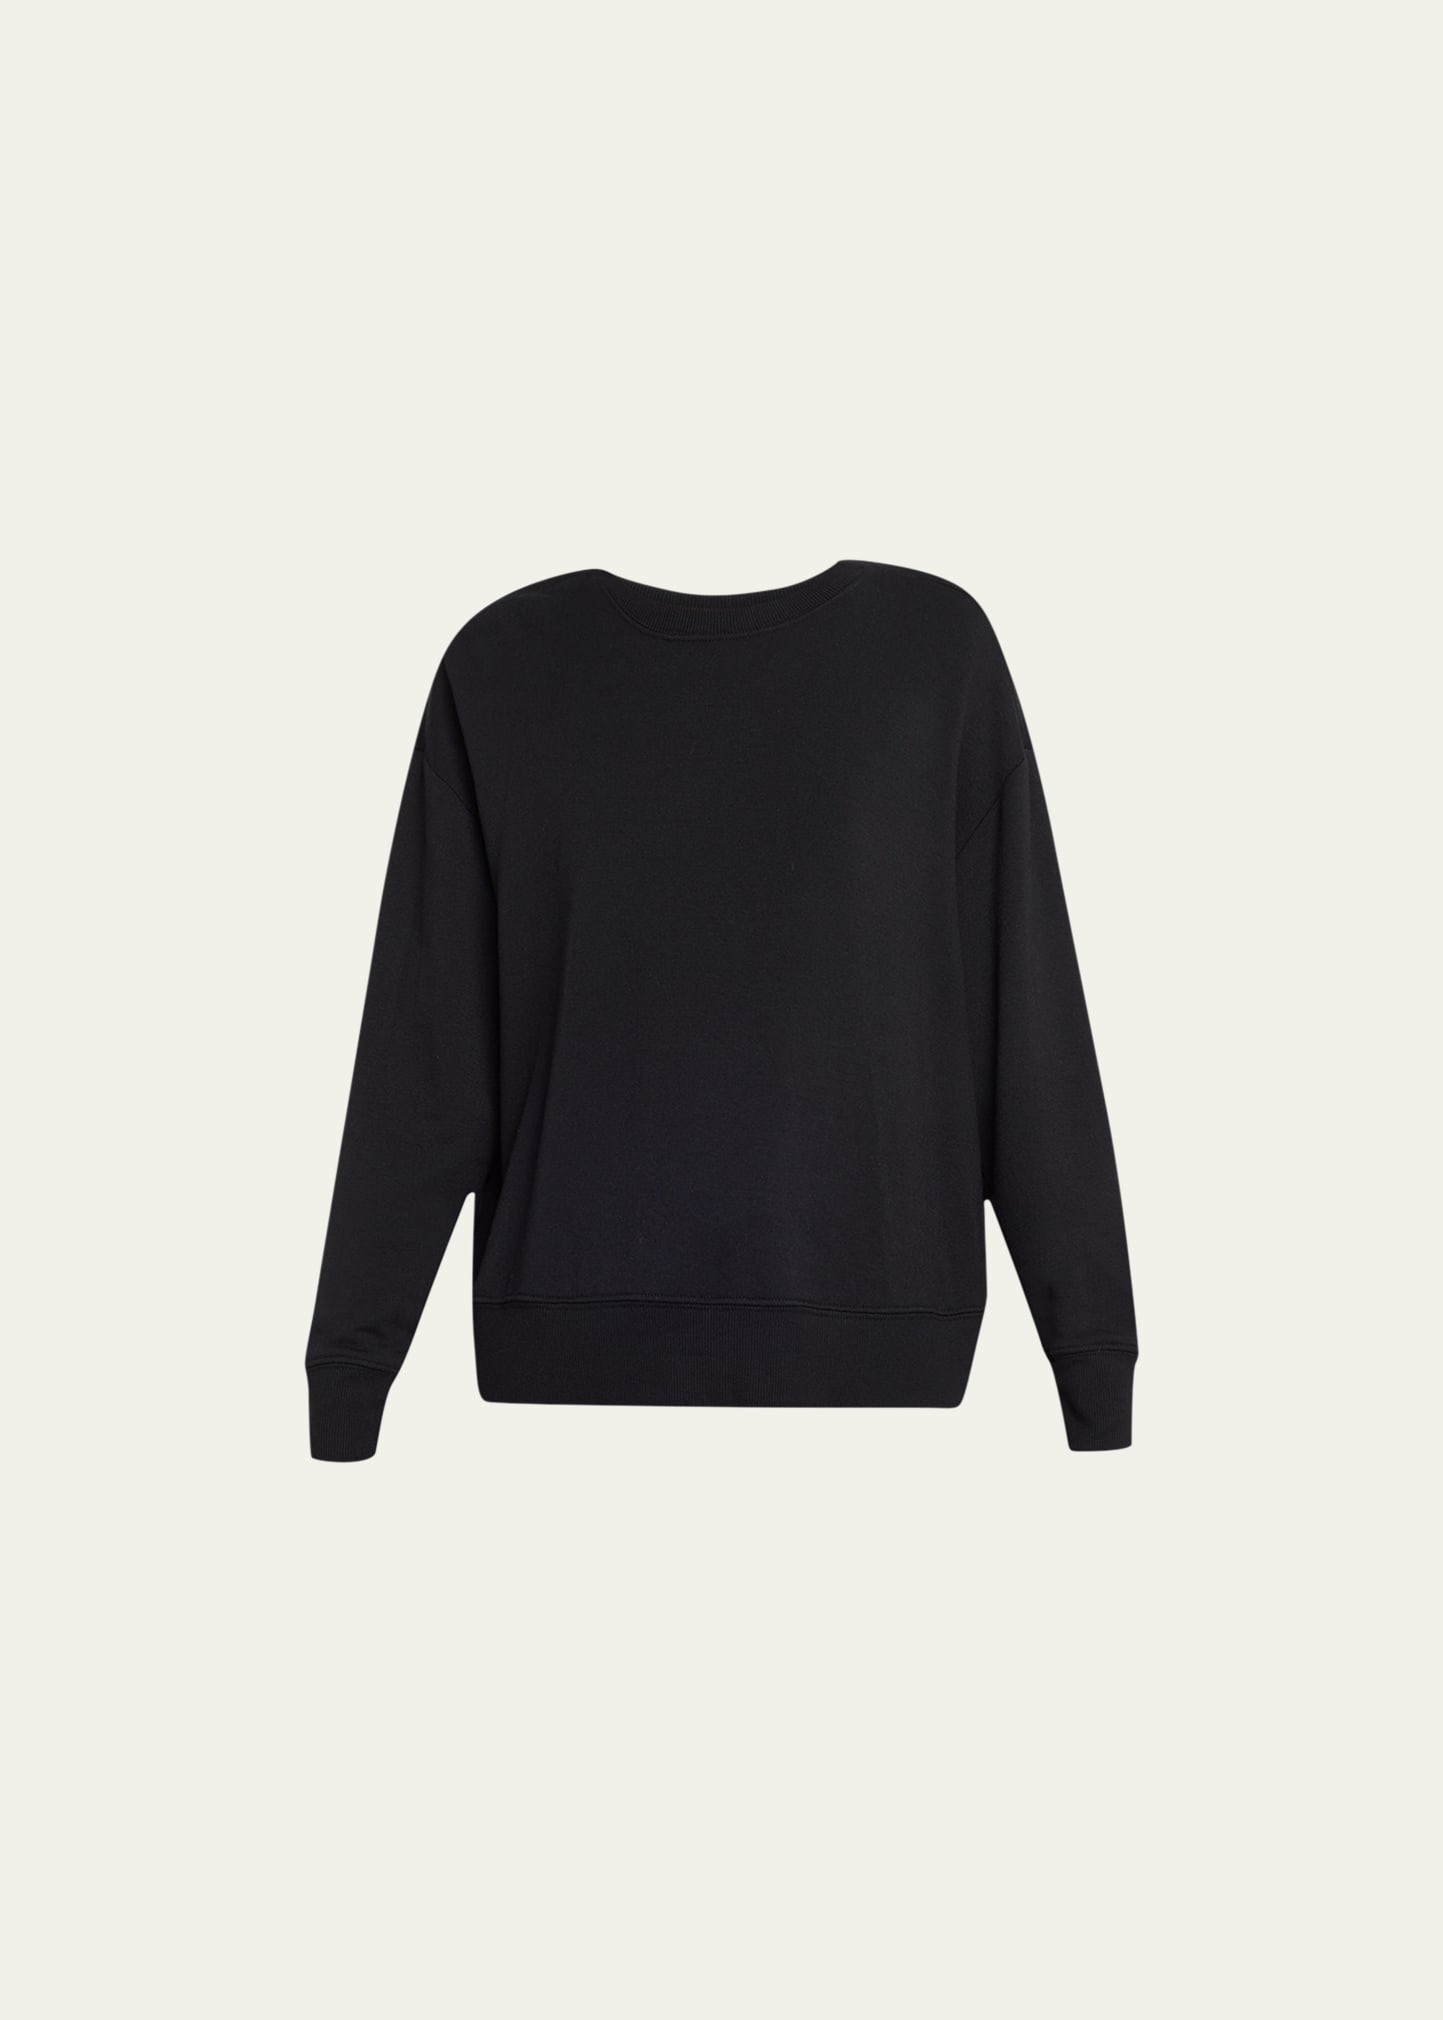 Splits59 Sonja Fleece Sweatshirt In Black